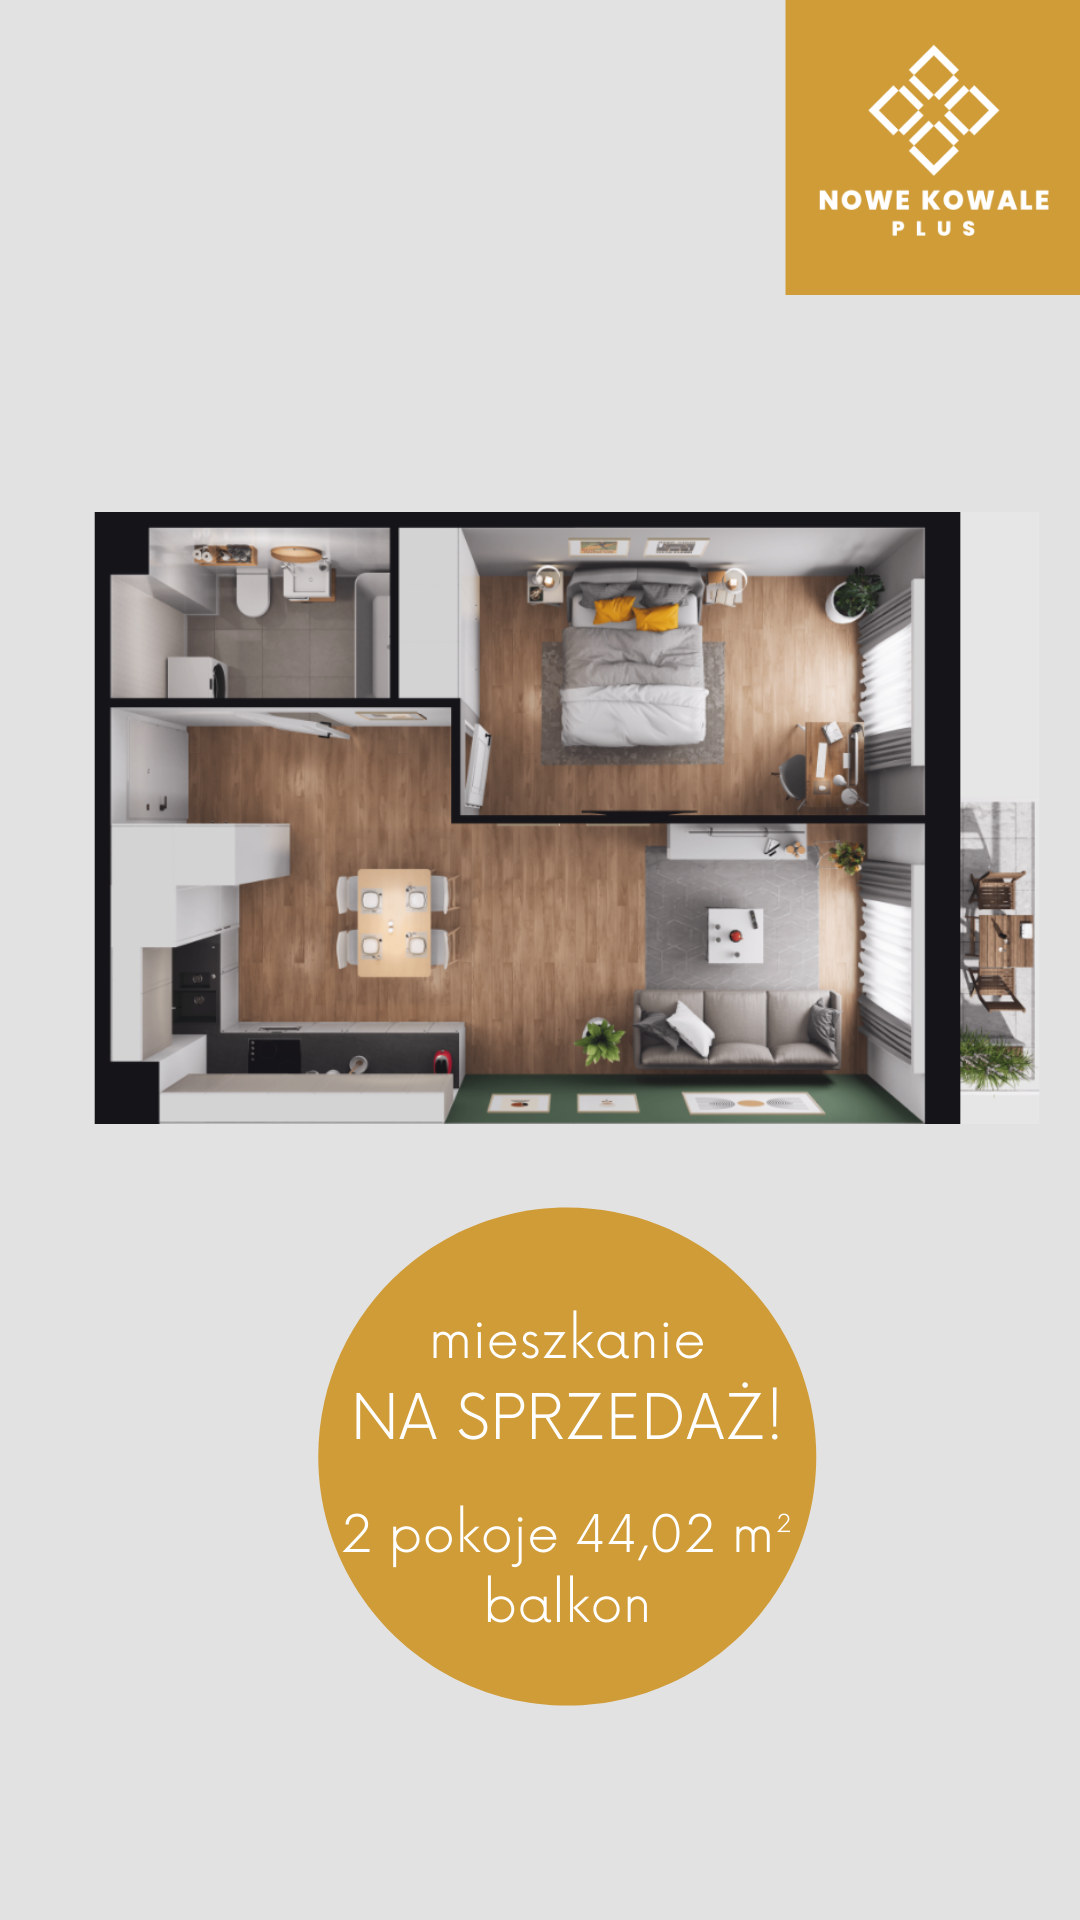 Przykładowe mieszkanie - Nowe Kowale Plus